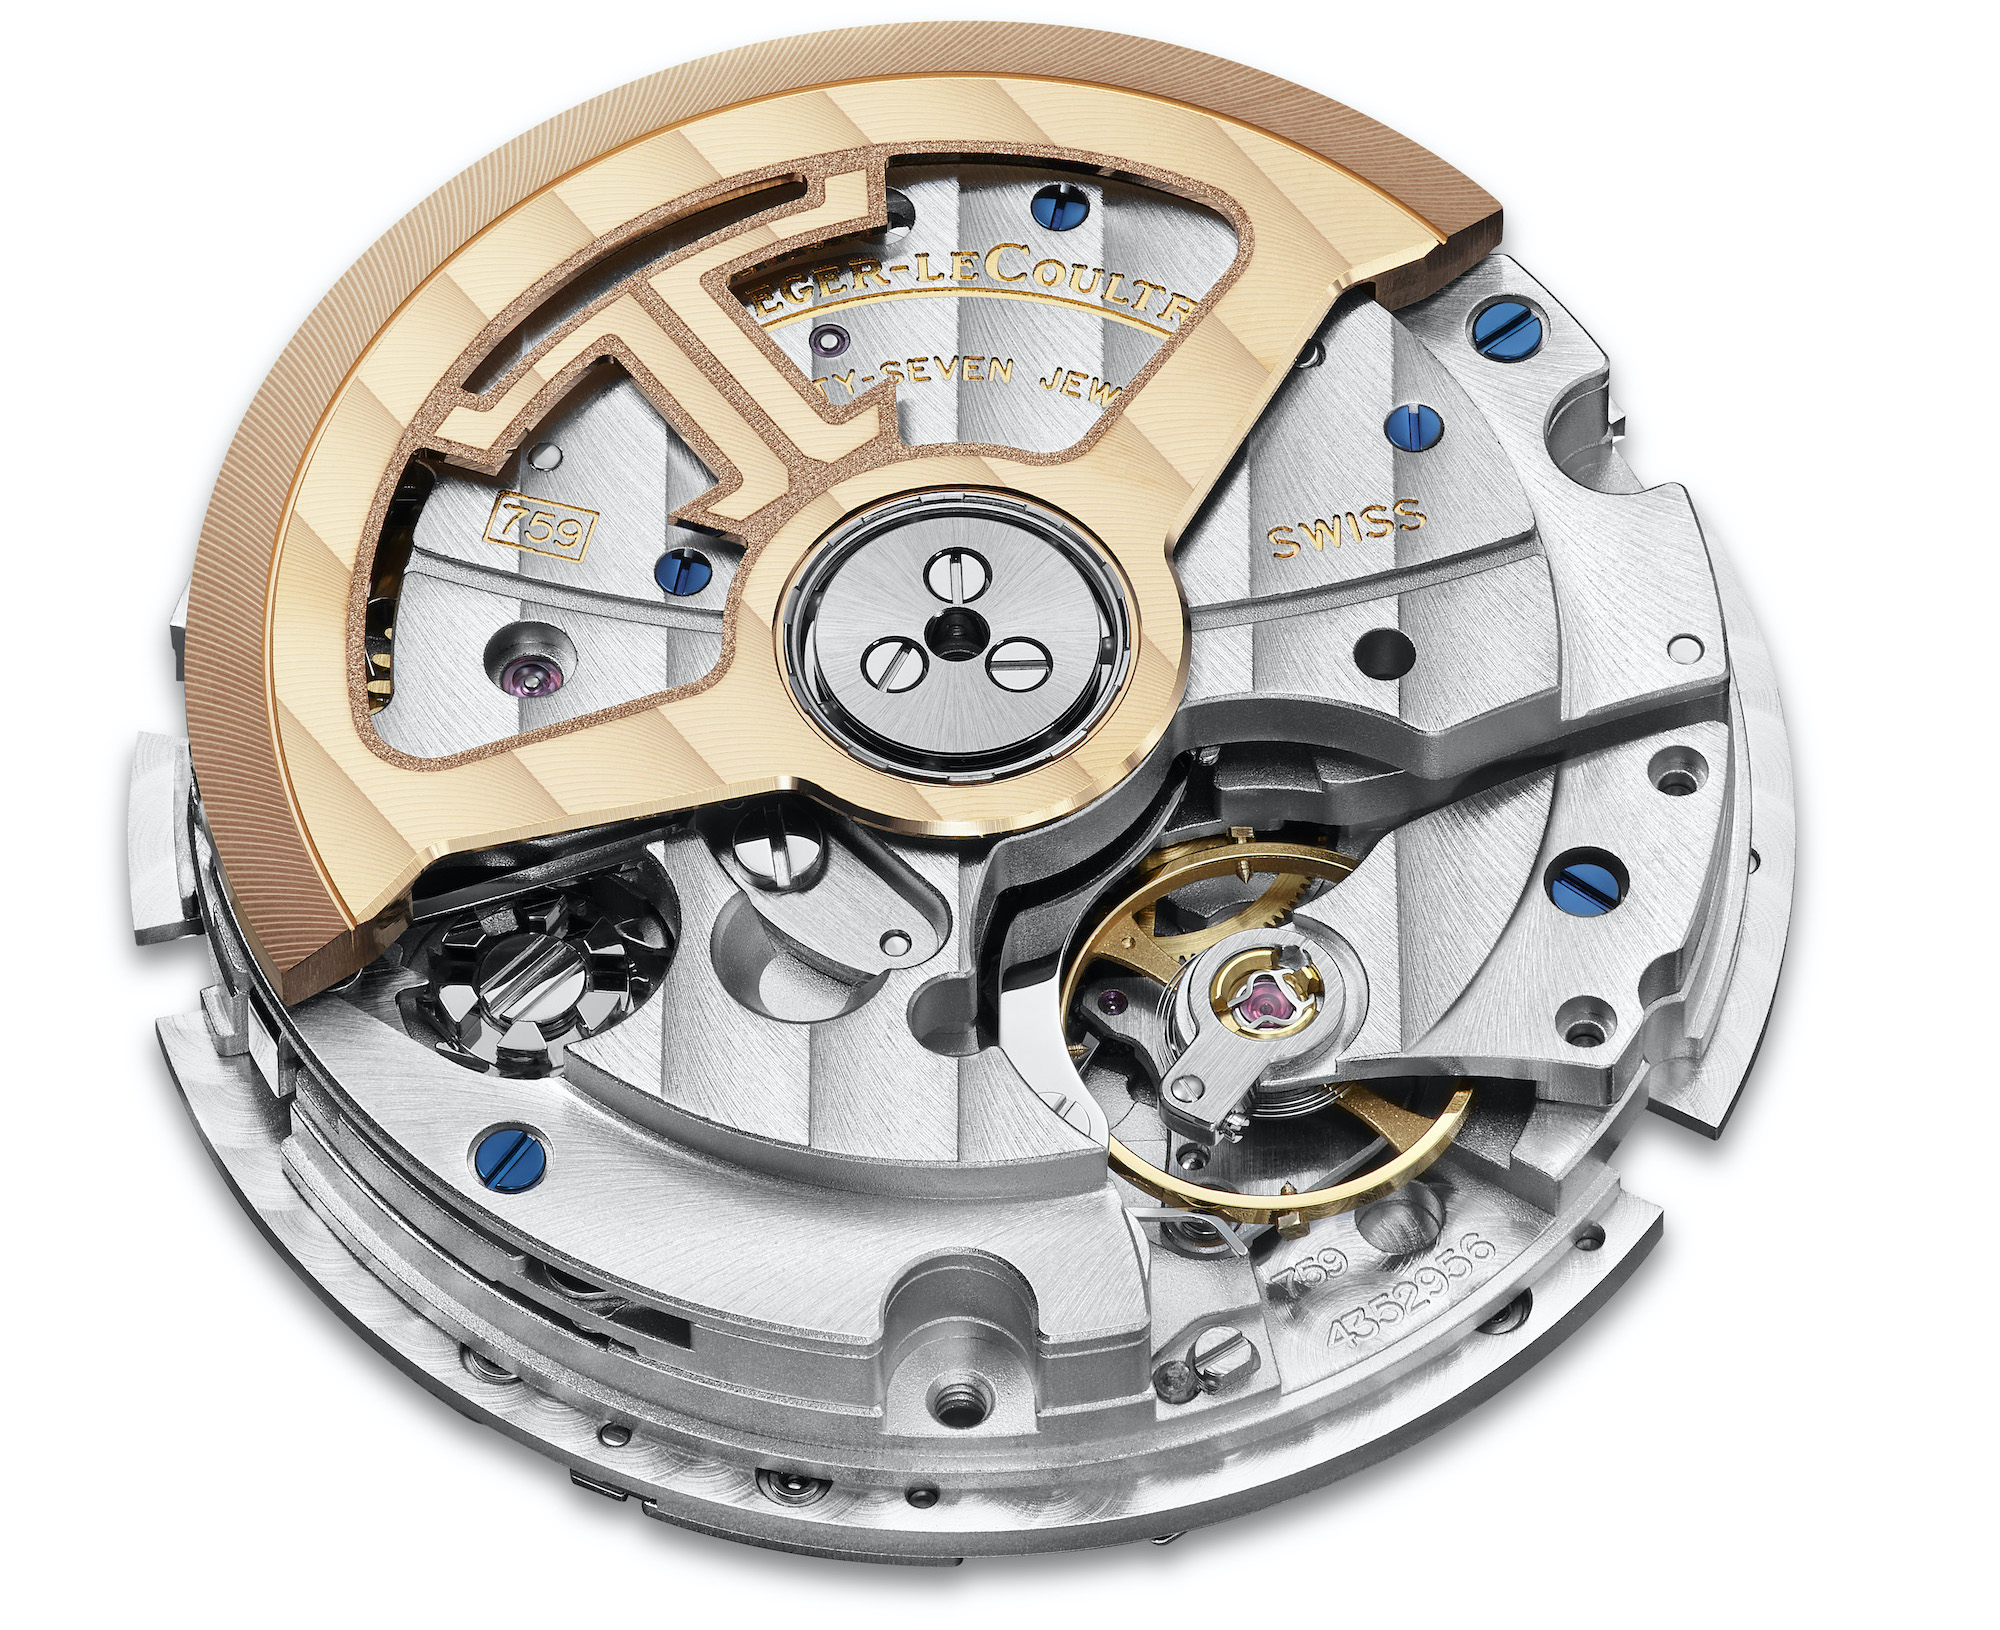 Часы Jaeger-LeCoultre Master Control с хронографом и календарем из розового золота